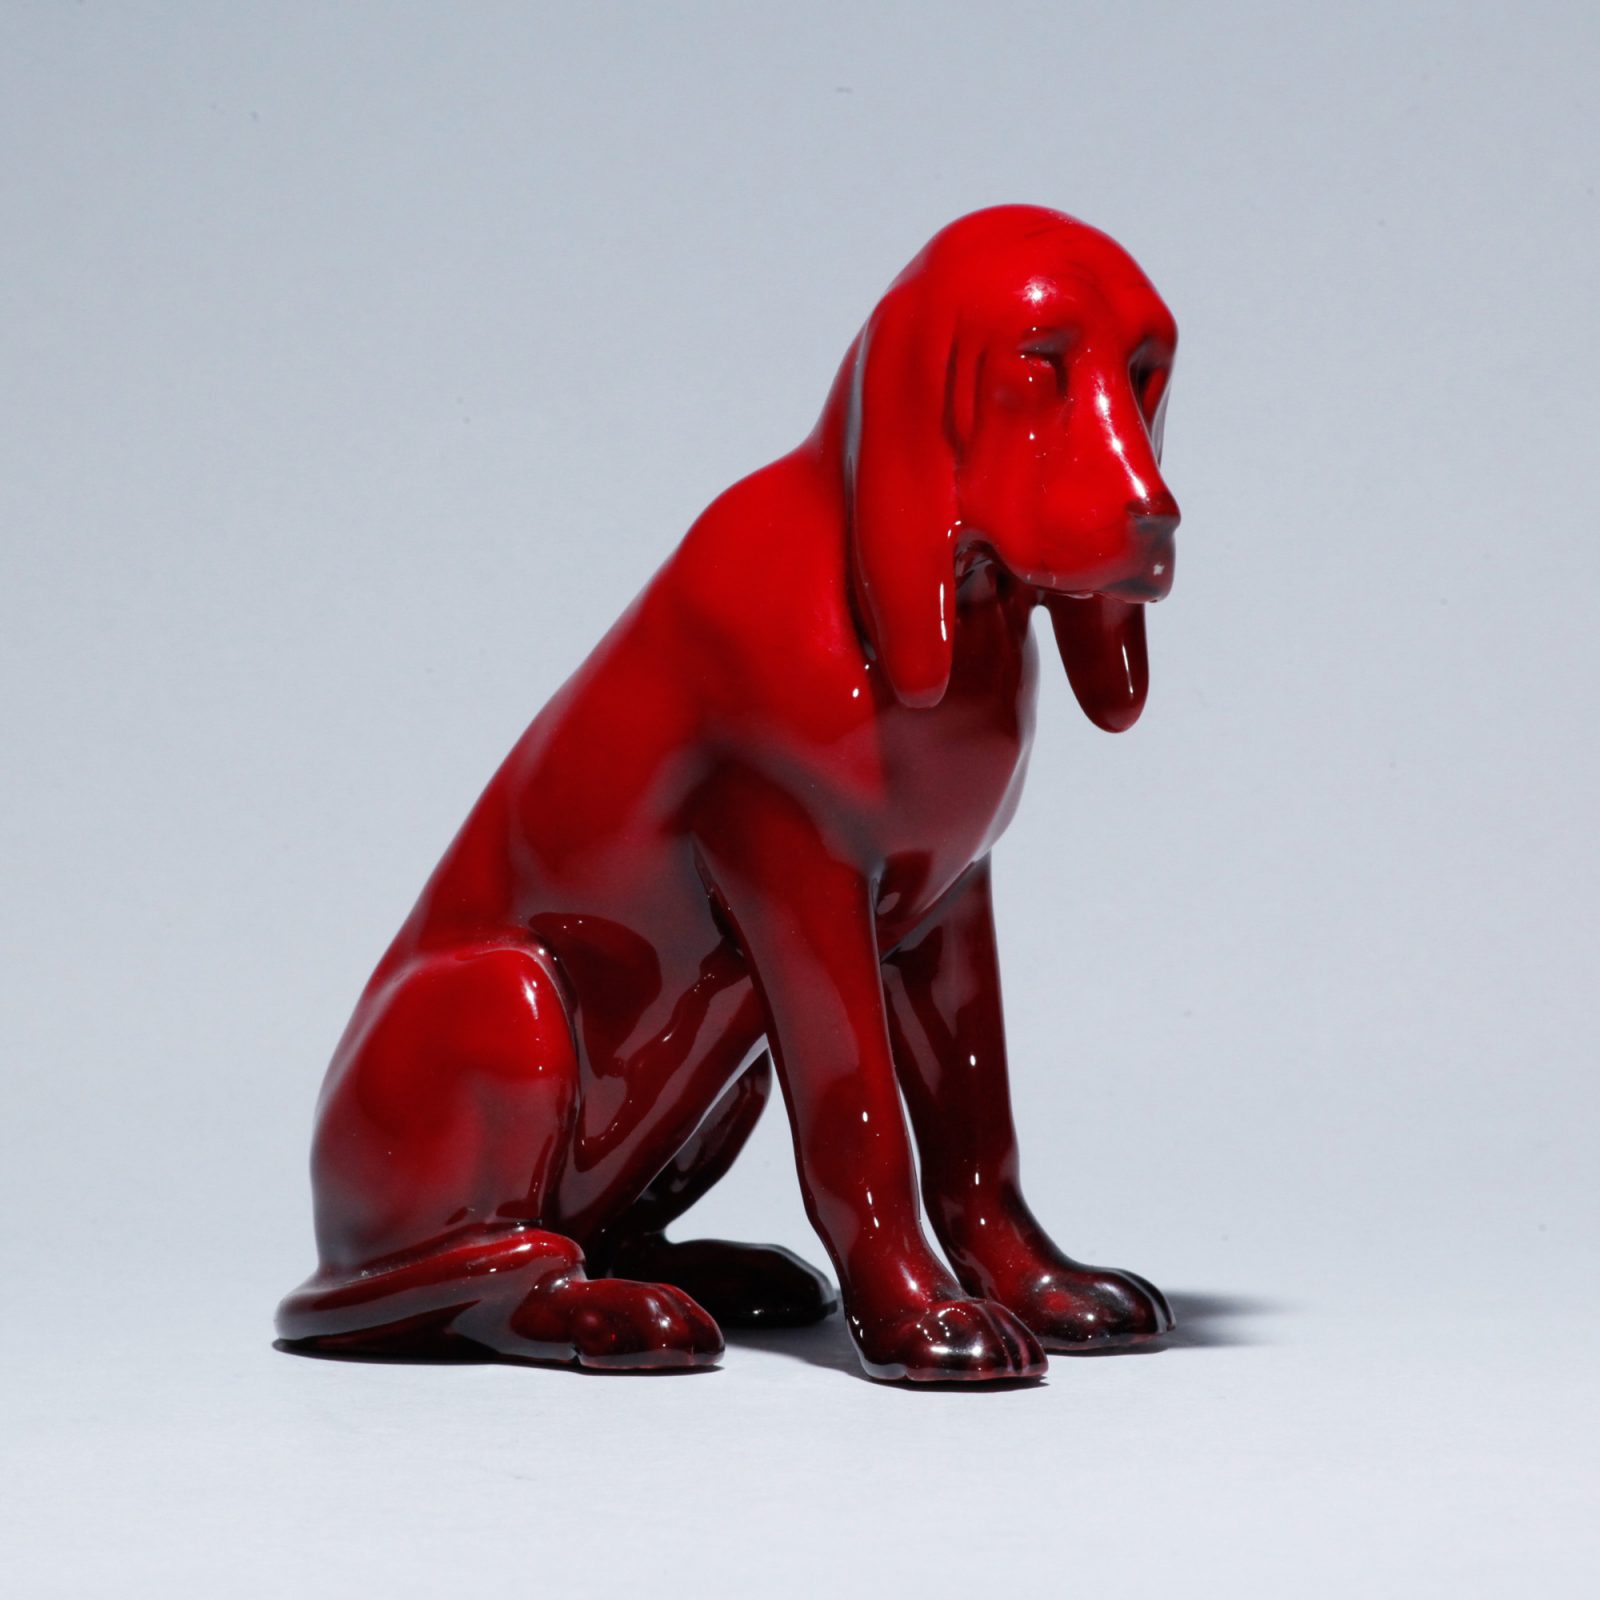 Flambe Bloodhound HN176 - Royal Doulton Animal